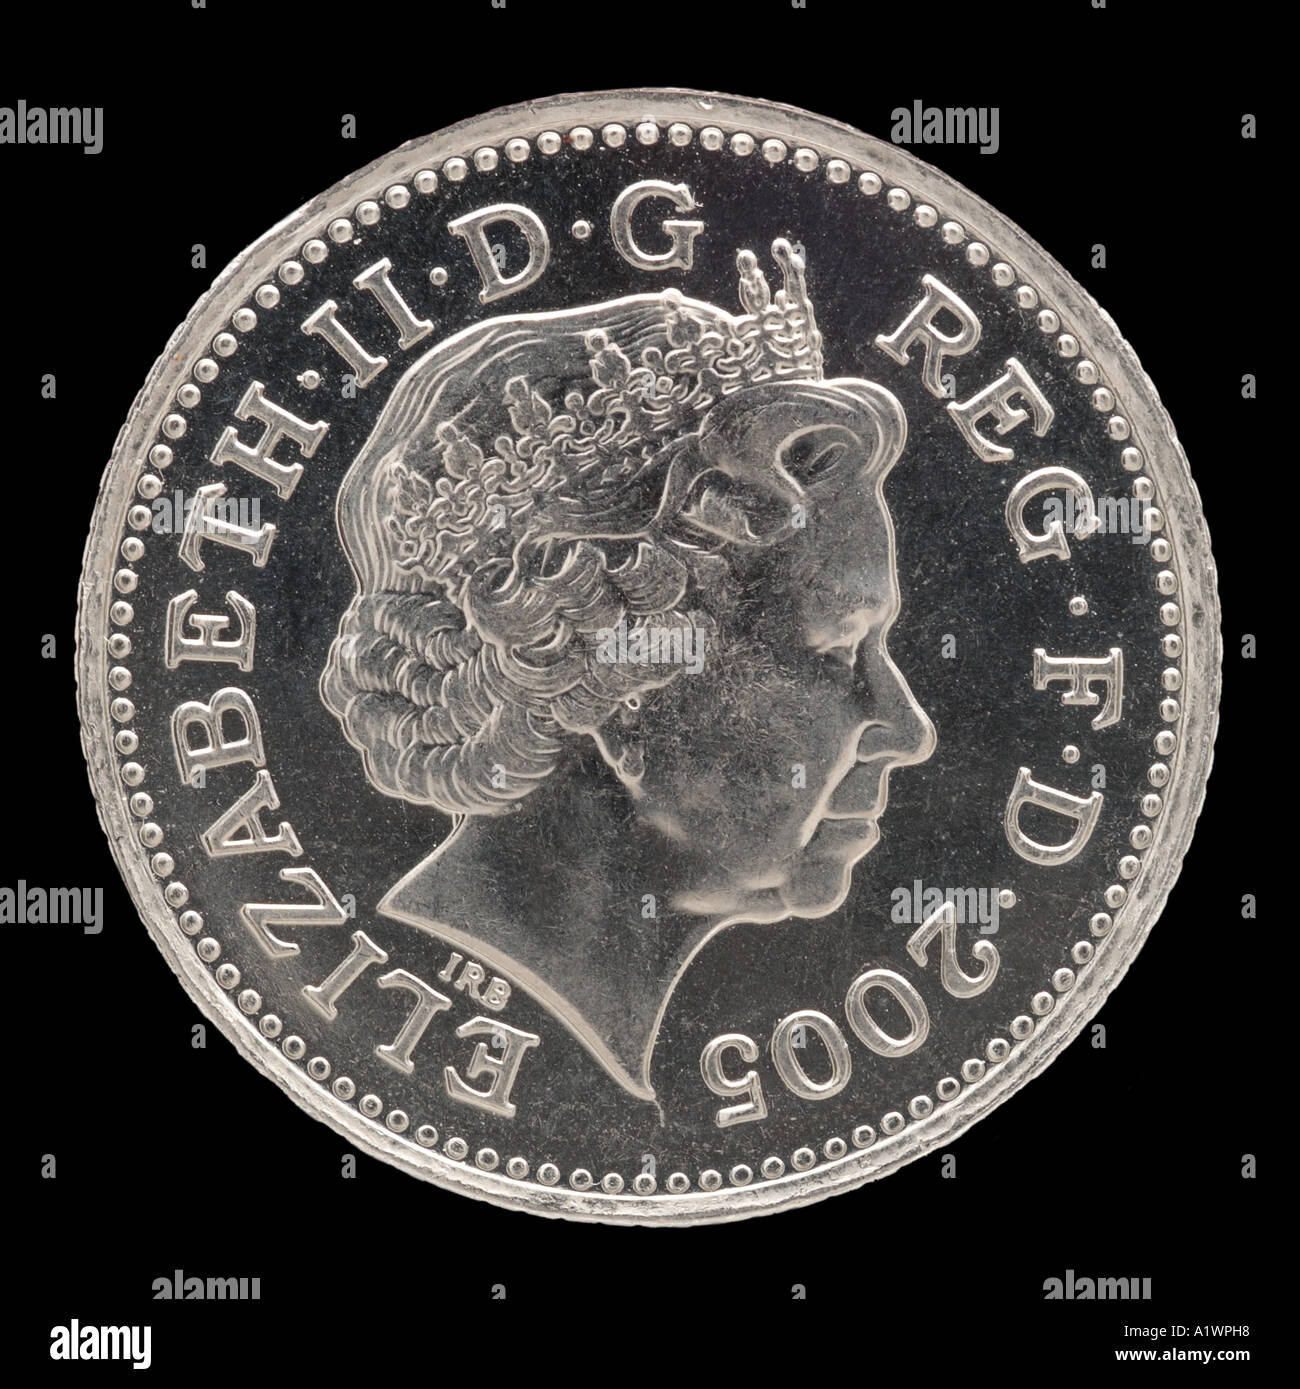 La reine Elizabeth II Regina Reg 2 virgule 5 cinq nouveaux pence P droit face aux jeunes de la couronne lumineuse argent profil Banque D'Images